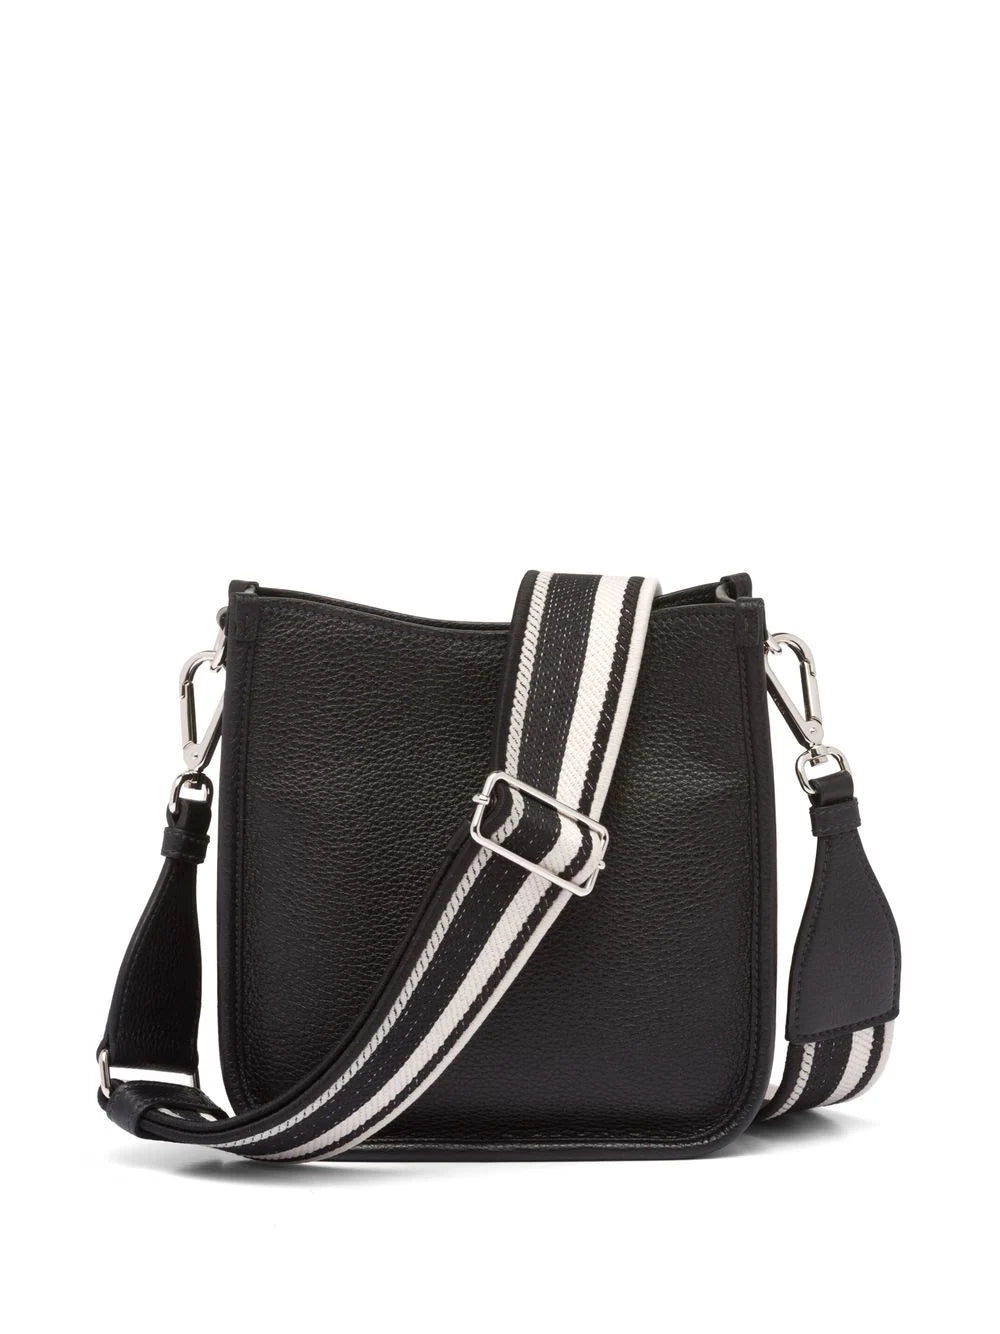 Mini leather crossbody bag in black - Prada